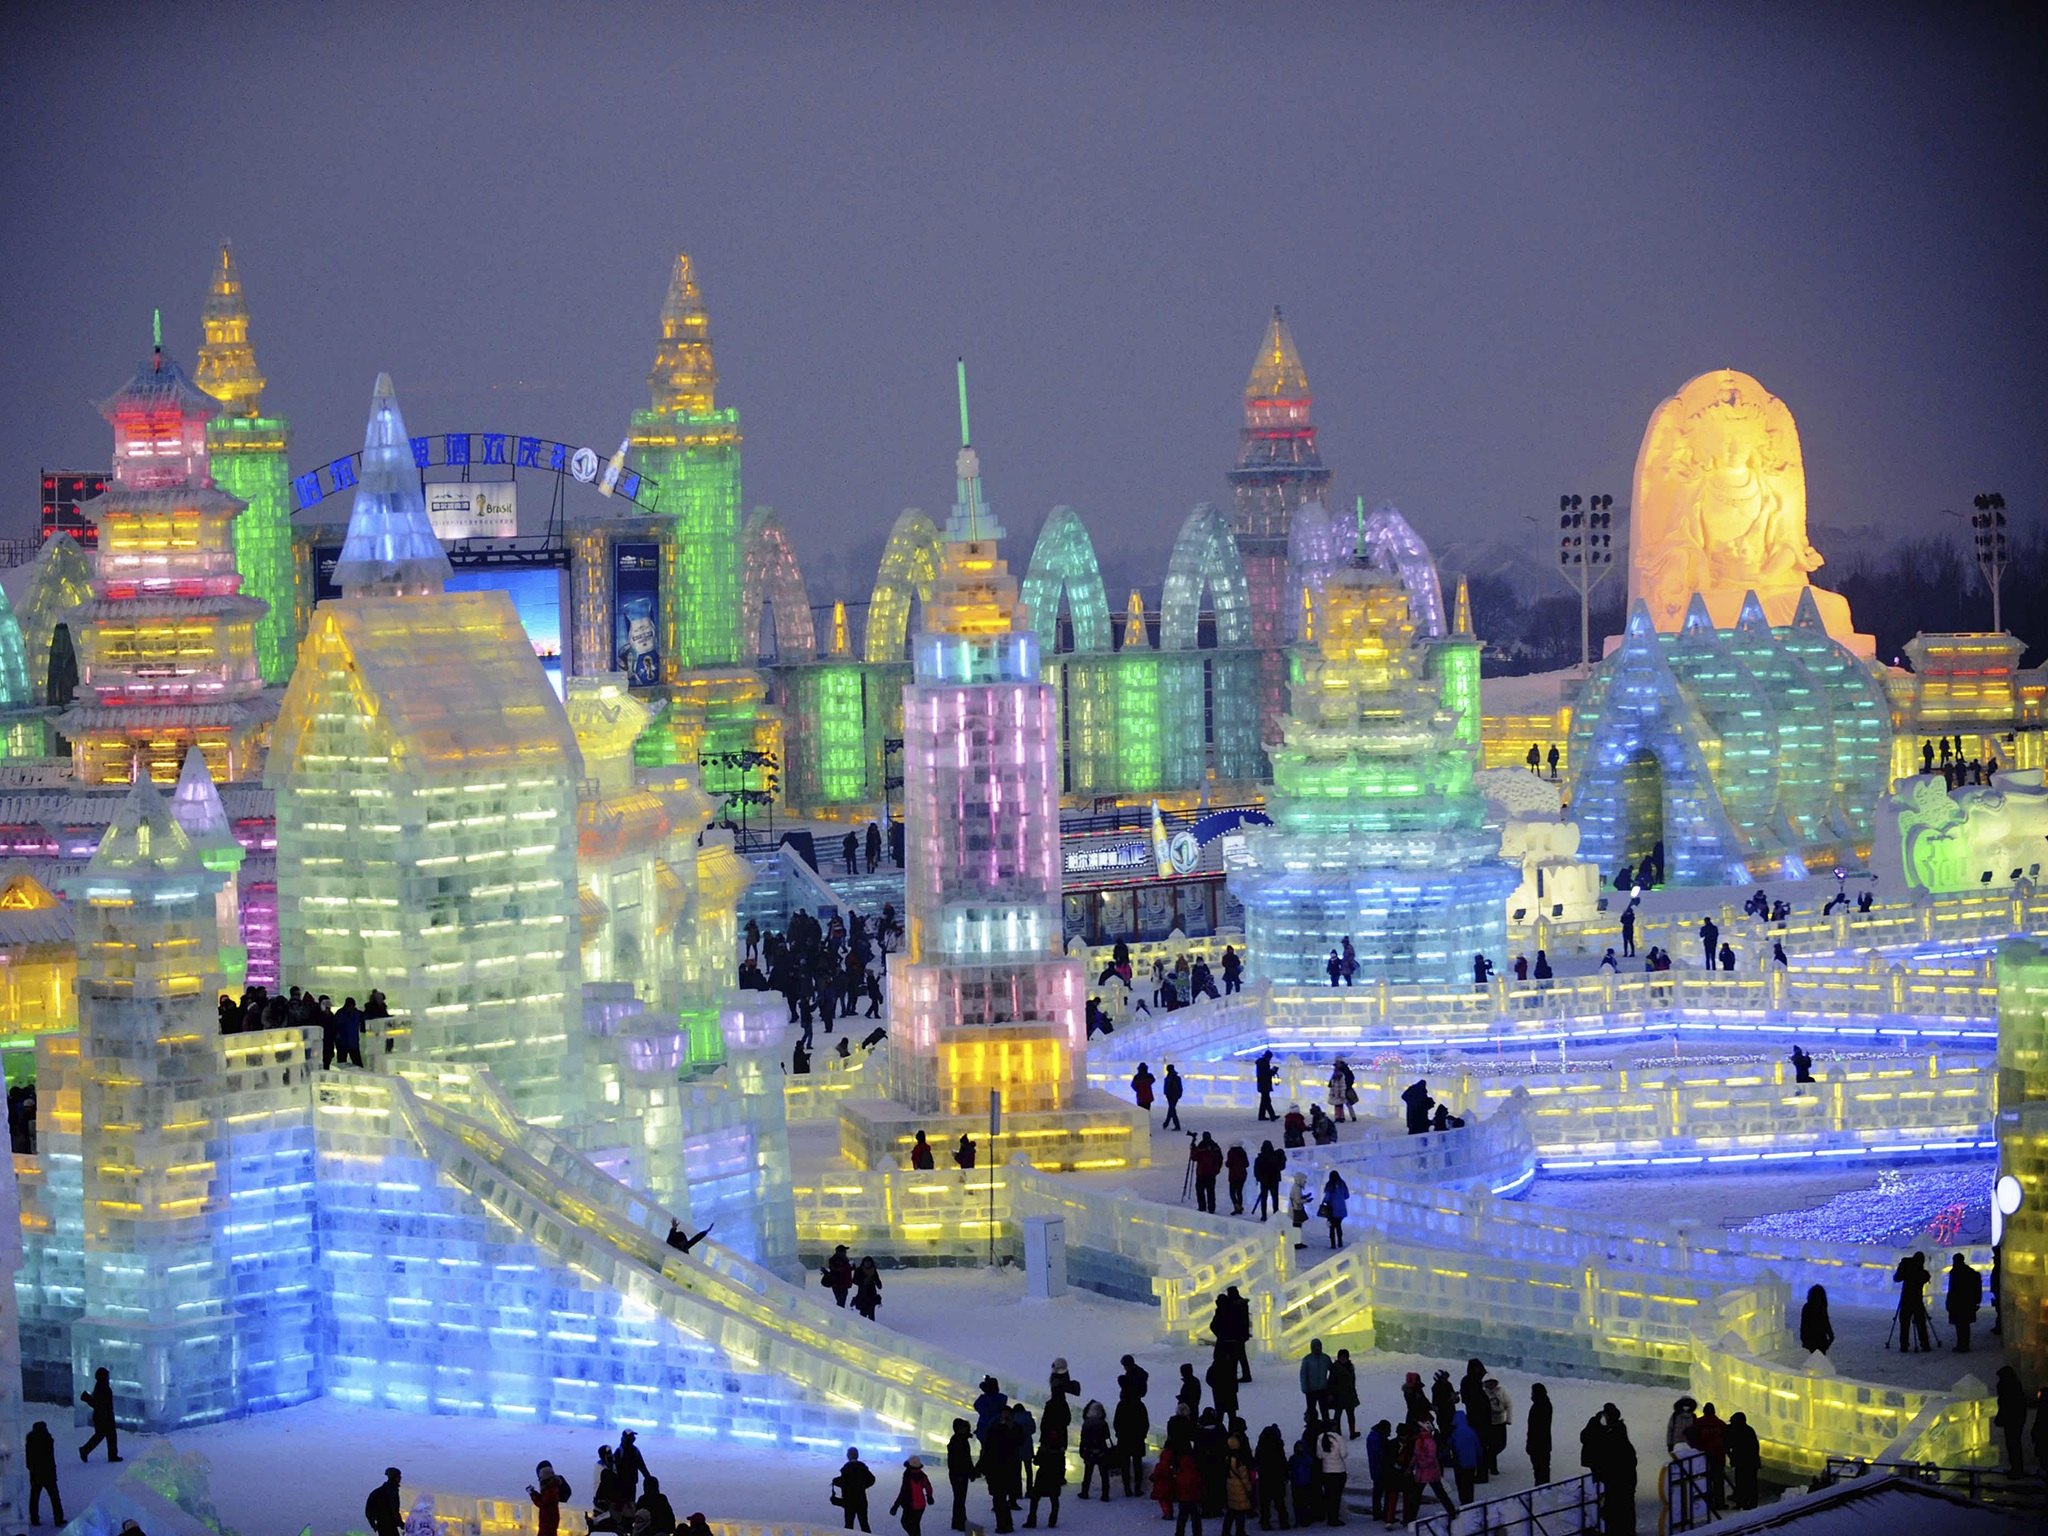 Ледовый город. Харбин снежный городок. Фестиваль ледяных скульптур в Харбине. Ледяной город в Китае Харбин. Фестиваль ледяных скульптур в Китае Харбин.